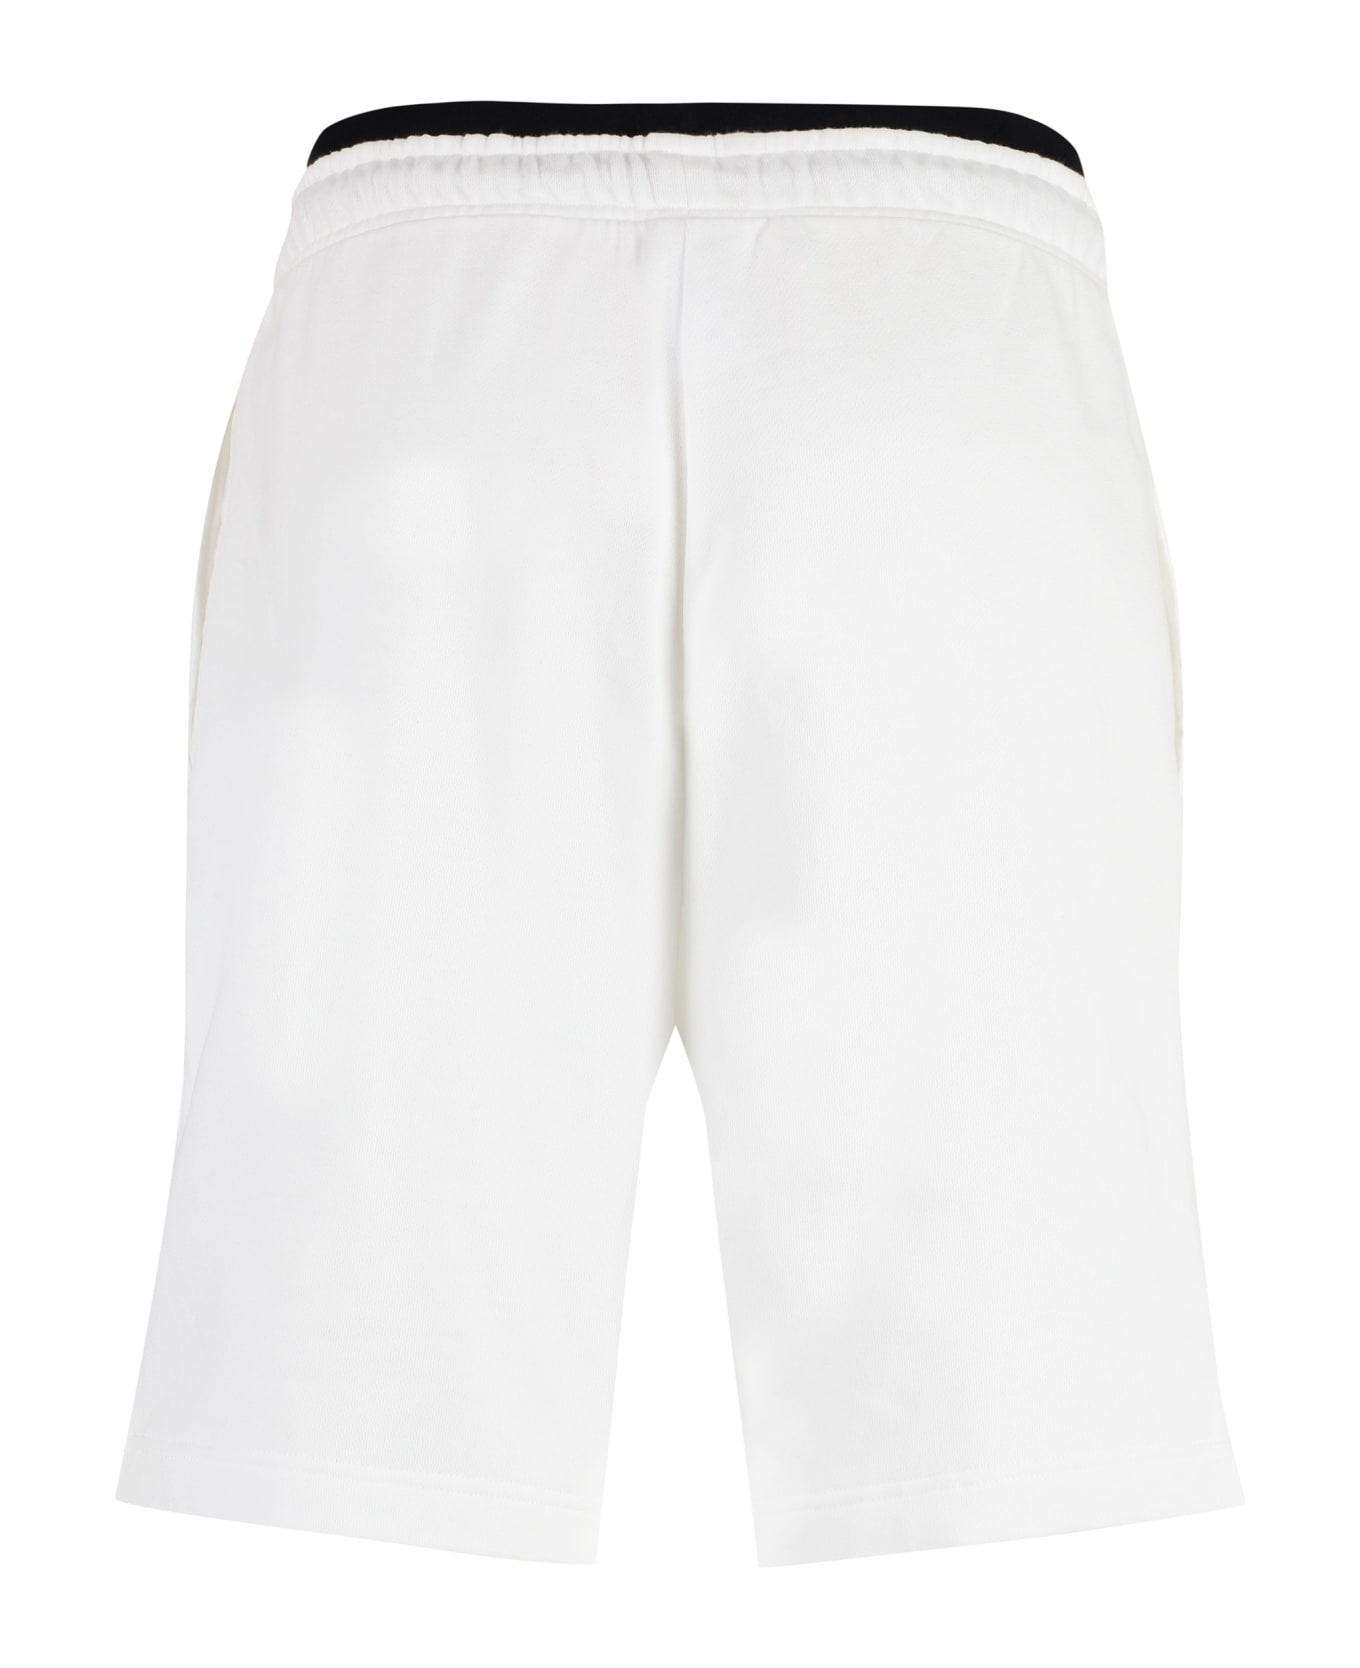 Hugo Boss Fleece Shorts - White